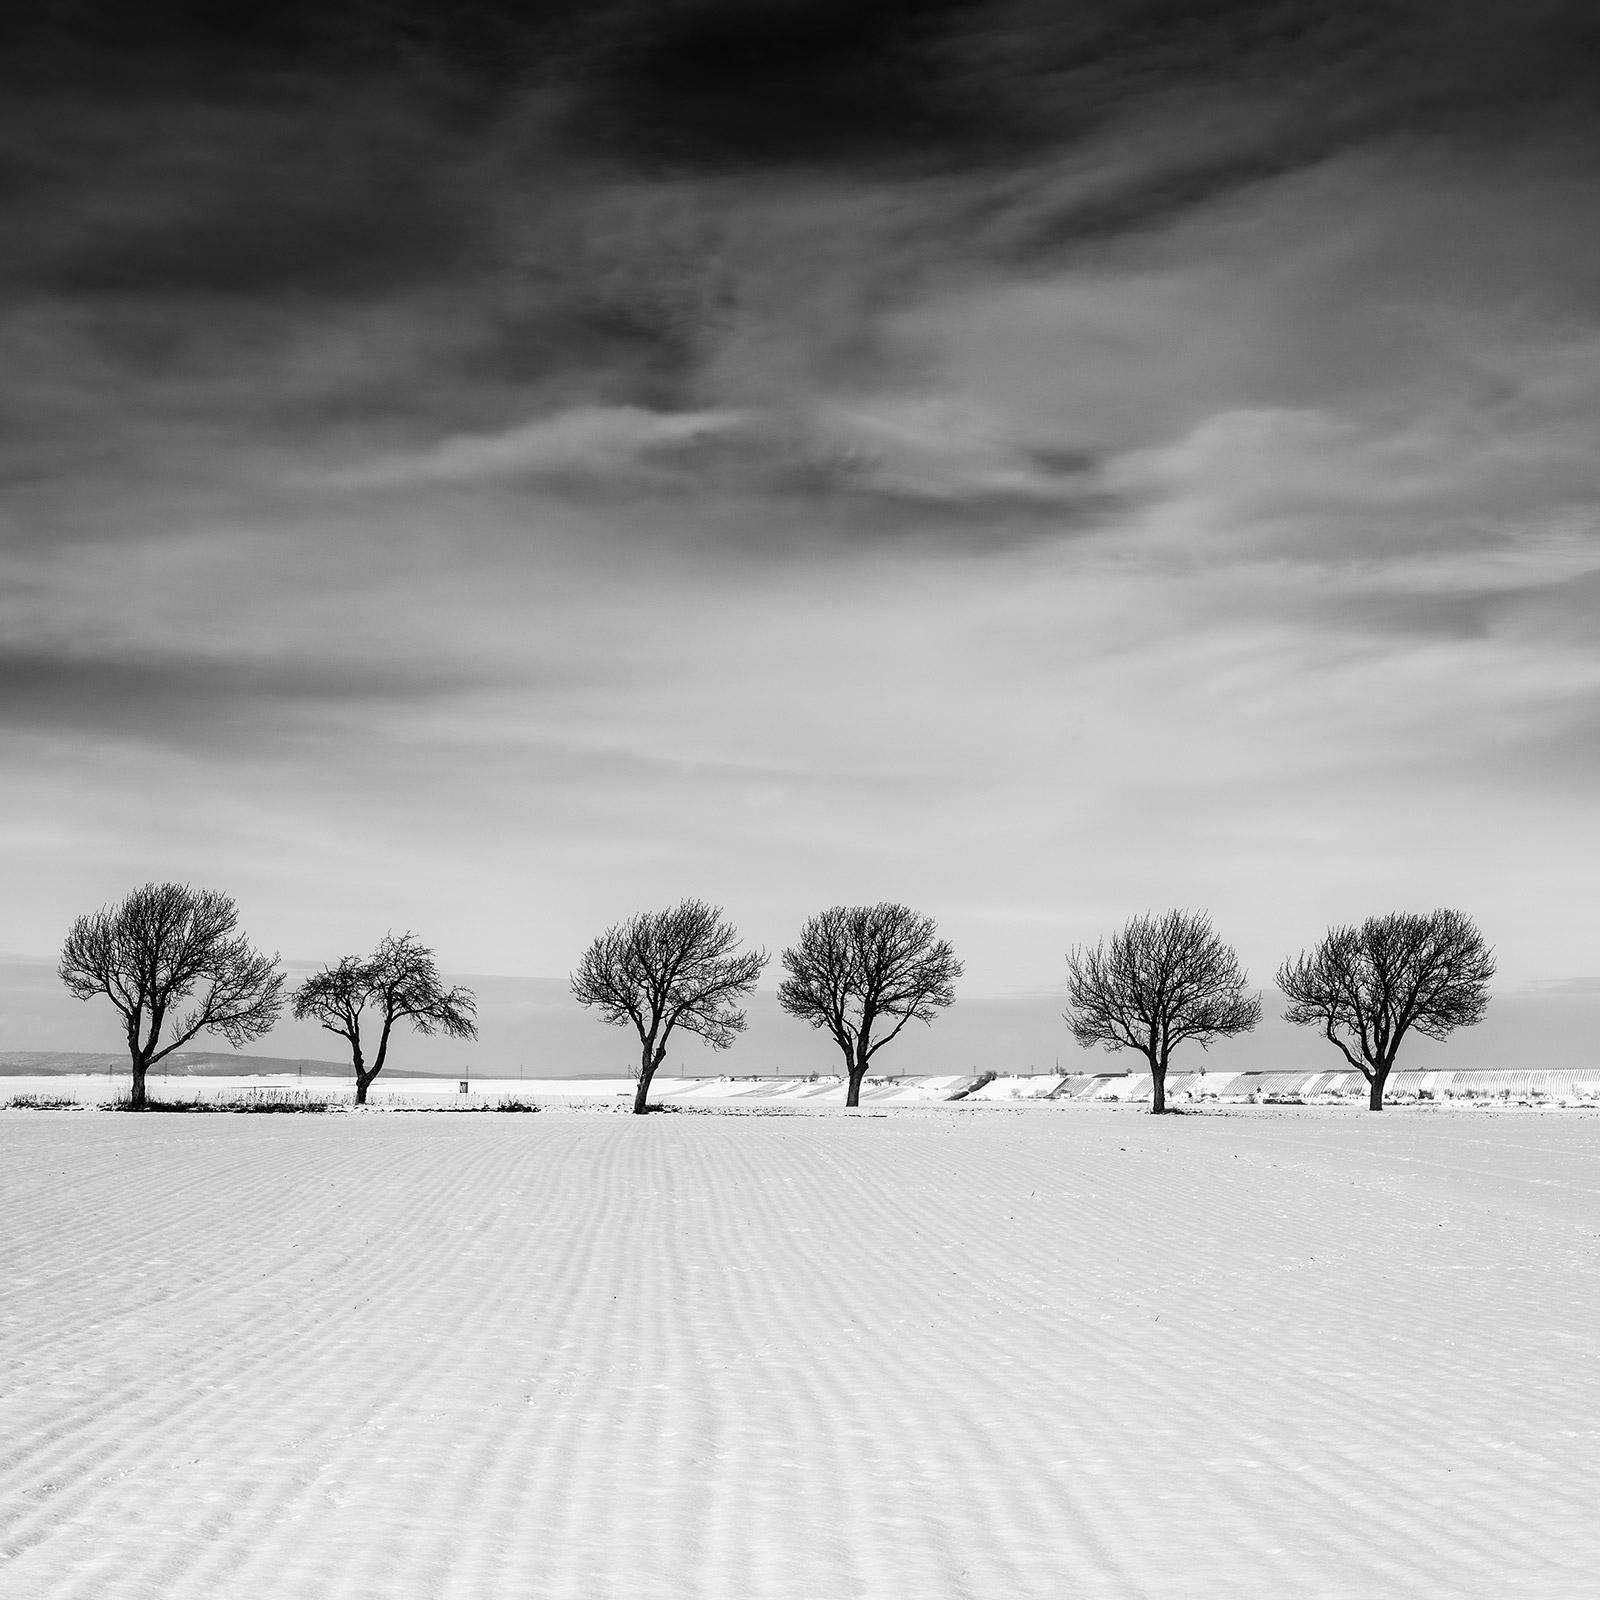 Sechs Bäume im verschneiten Feld, Österreich, Schwarz-Weiß-Landschaftsfotografie